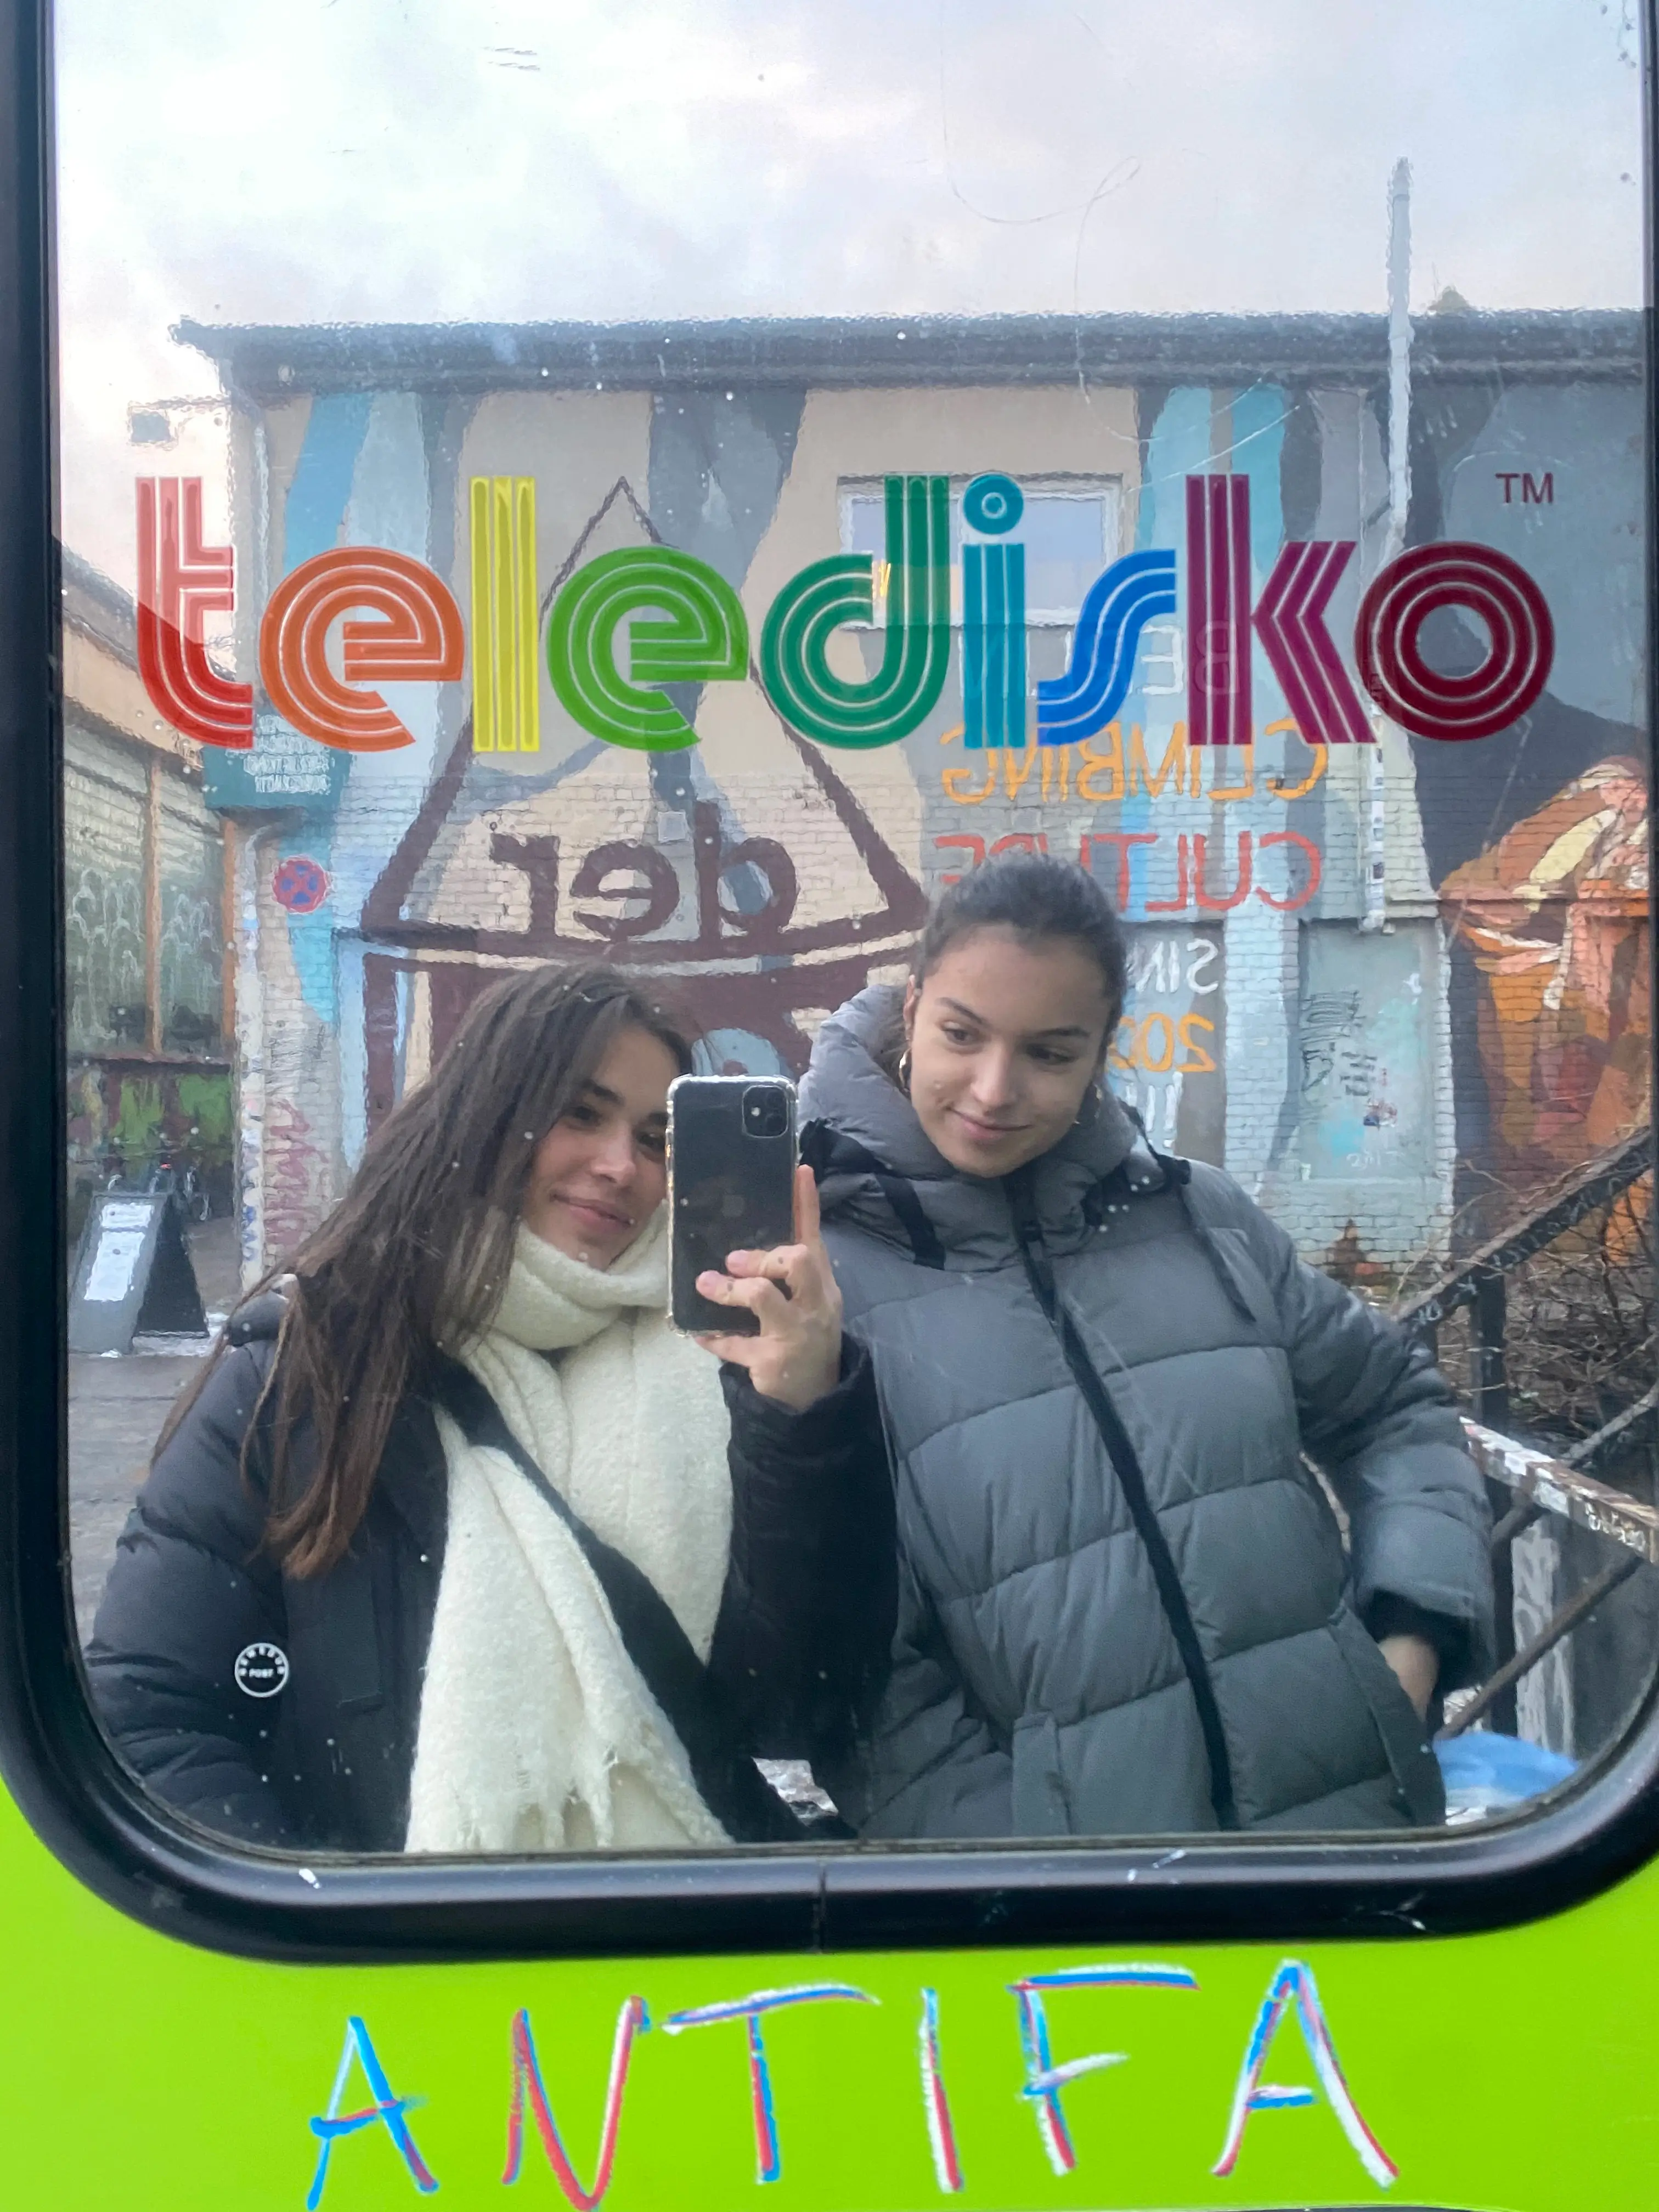 Two girls taking a selfie in a mirror, in front of the Teledisco, Berlin